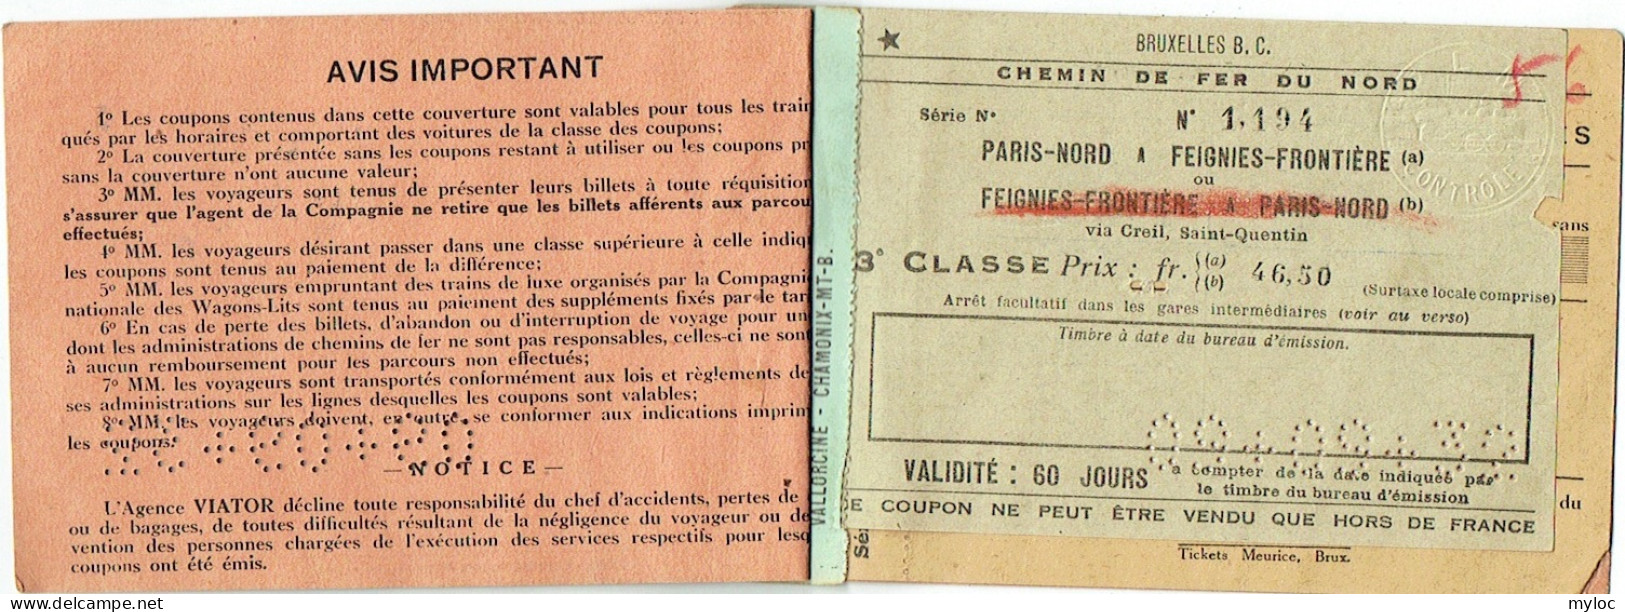 Billet/Ticket De Train.Chemin De Fer Du Nord à Feignes-Frontière Via Creil, St.-Quentin. 1932. Agence De Voyages VIATOR - Europe